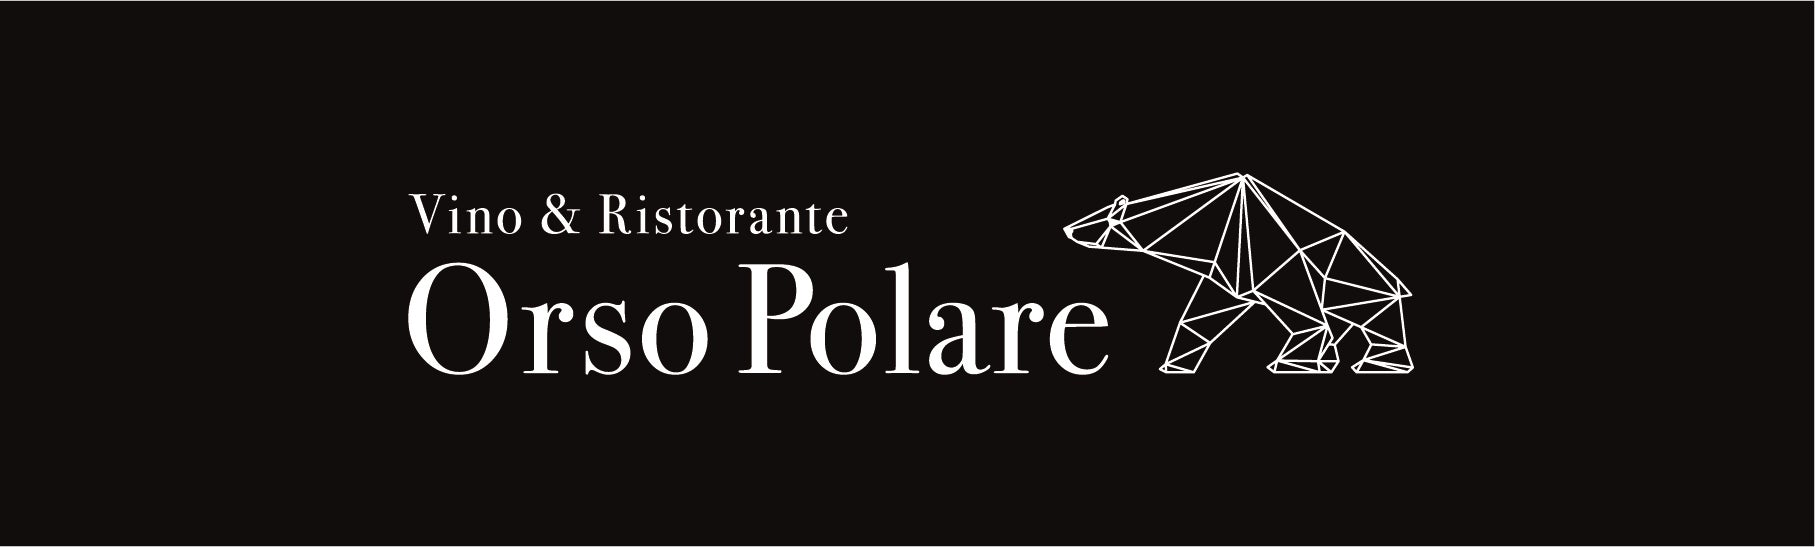 【マスターソムリエ鈴木培稚×先端AI】ワンランク上のおもてなしを提供するレストラン「Orso Polare」をオープン。